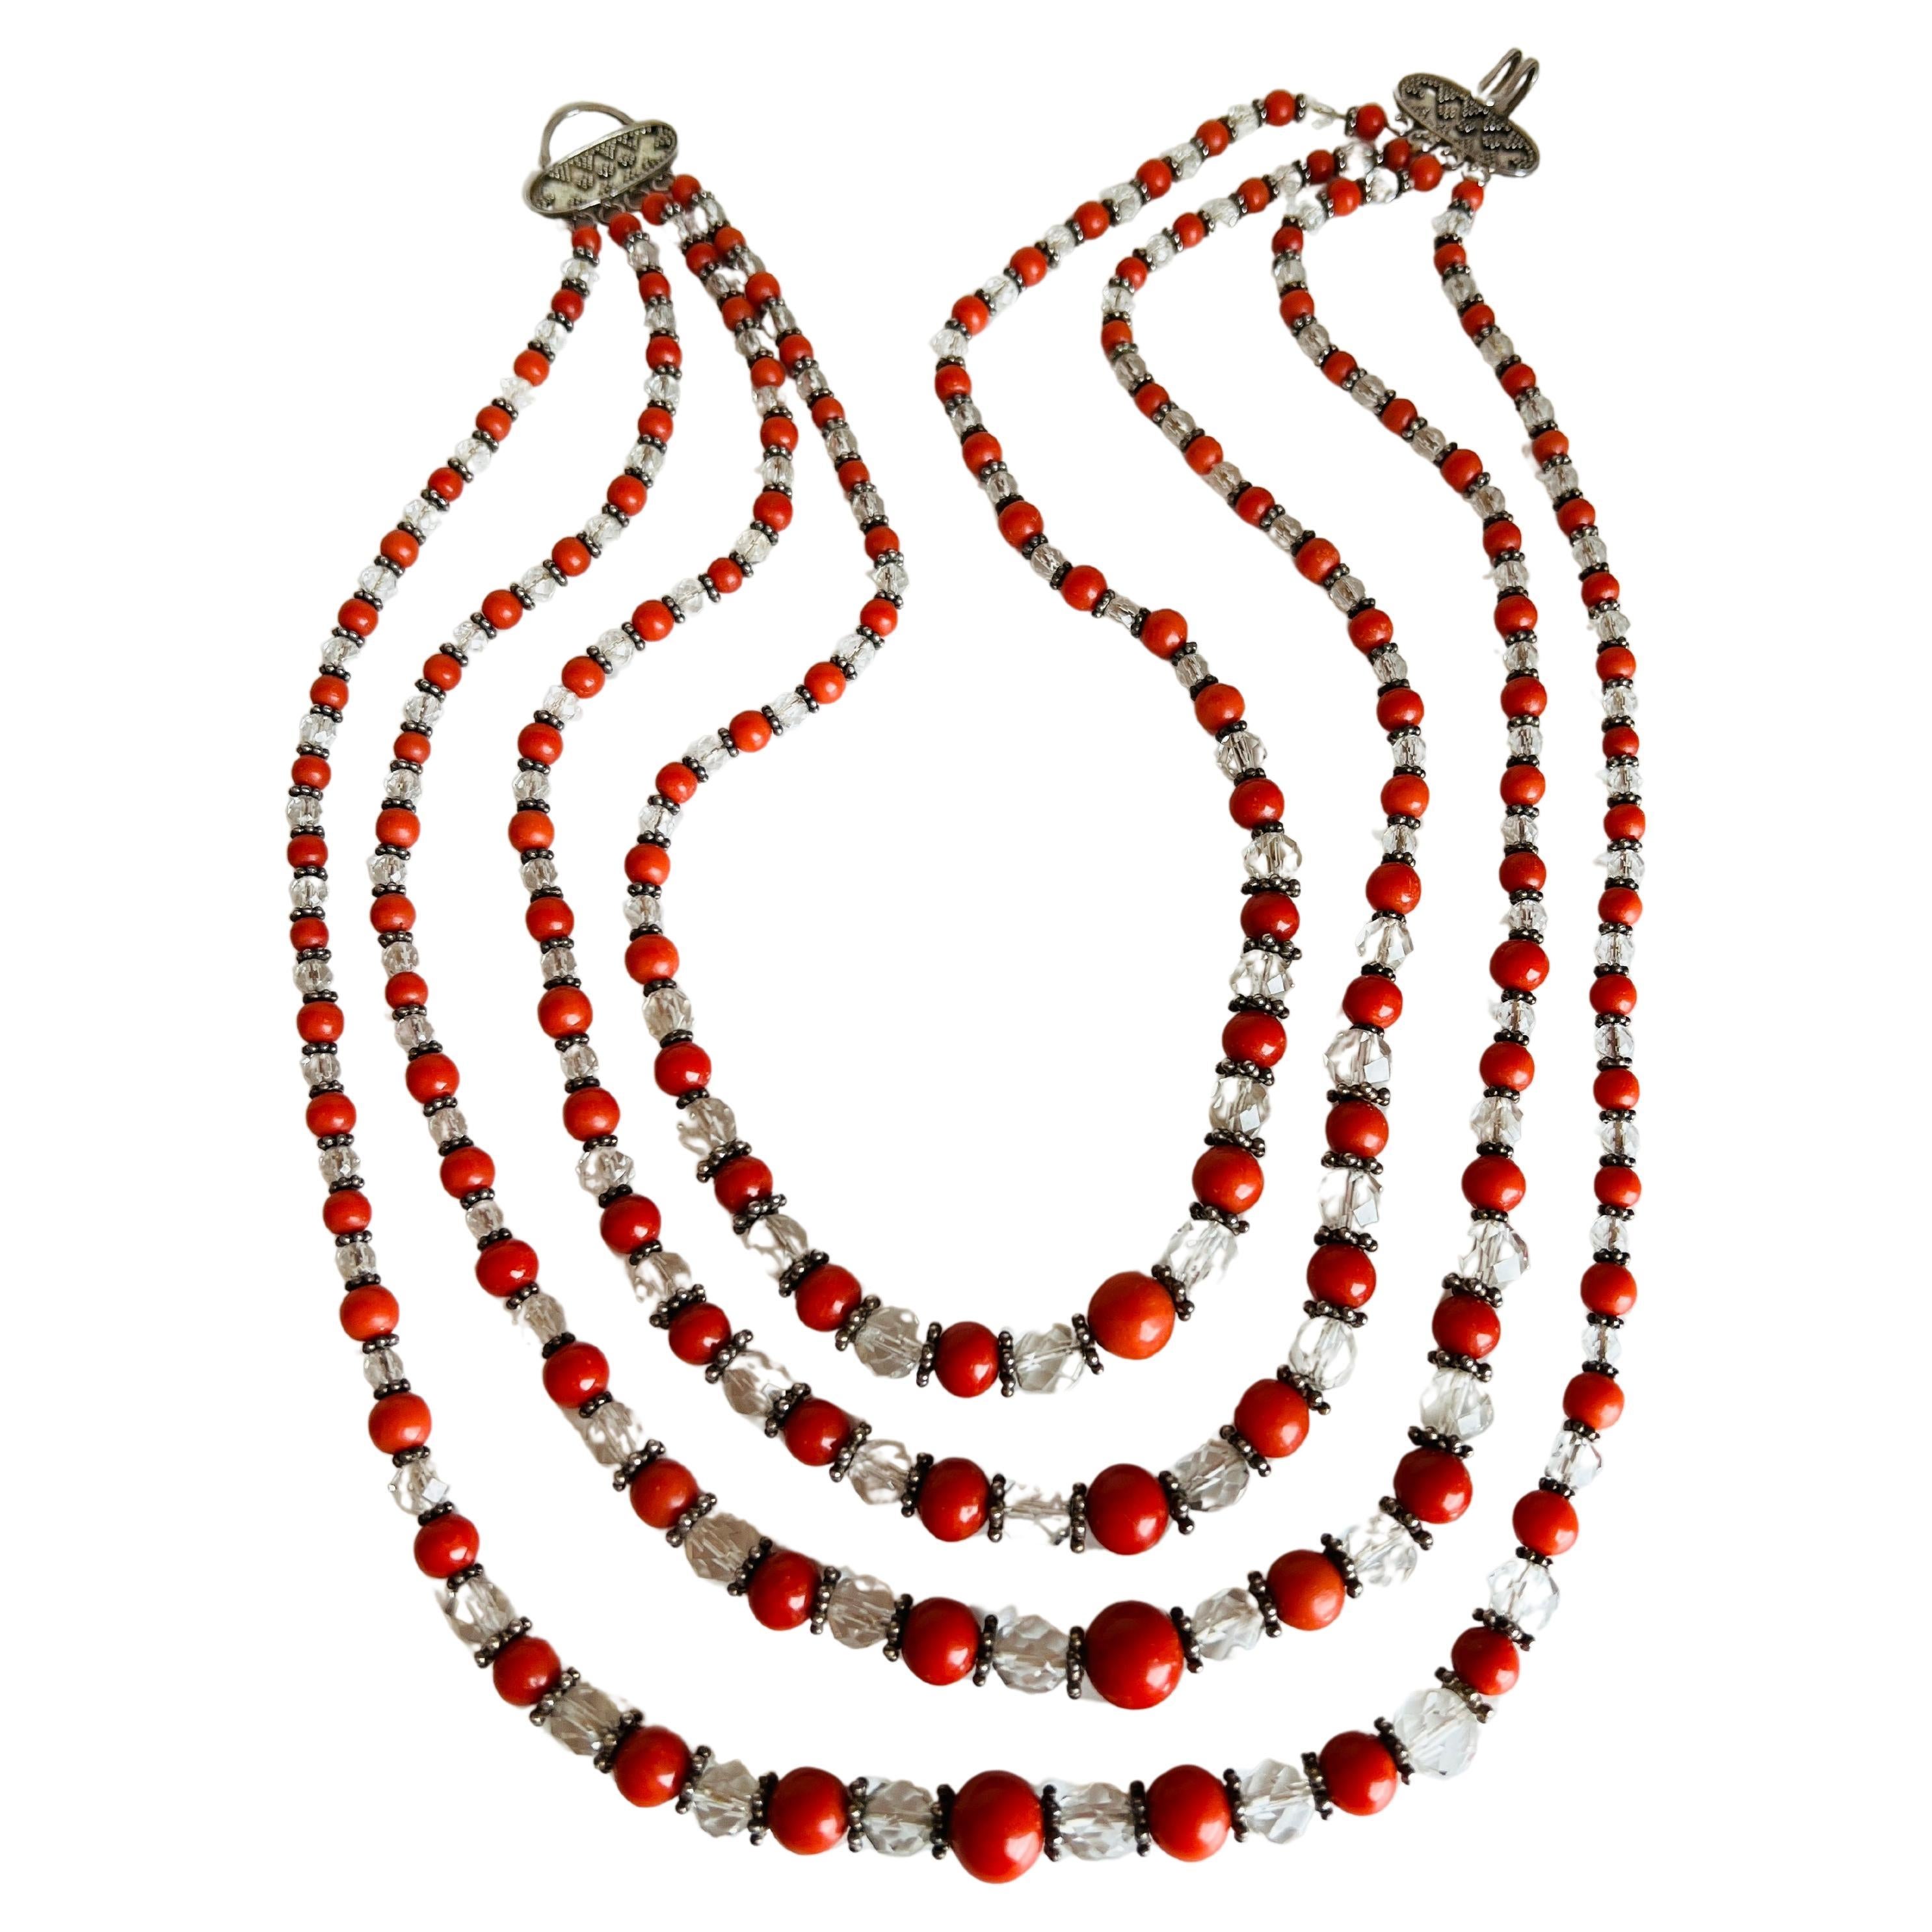 Eine elegante Halskette mit 4 Strängen aus abwechselnd leuchtenden, orangeroten Korallenperlen und funkelnden, facettierten, klaren Glasperlen, die in ihrer Größe variieren, um den Reiz zu erhöhen. Die Fassung aus Sterlingsilber sorgt für ein